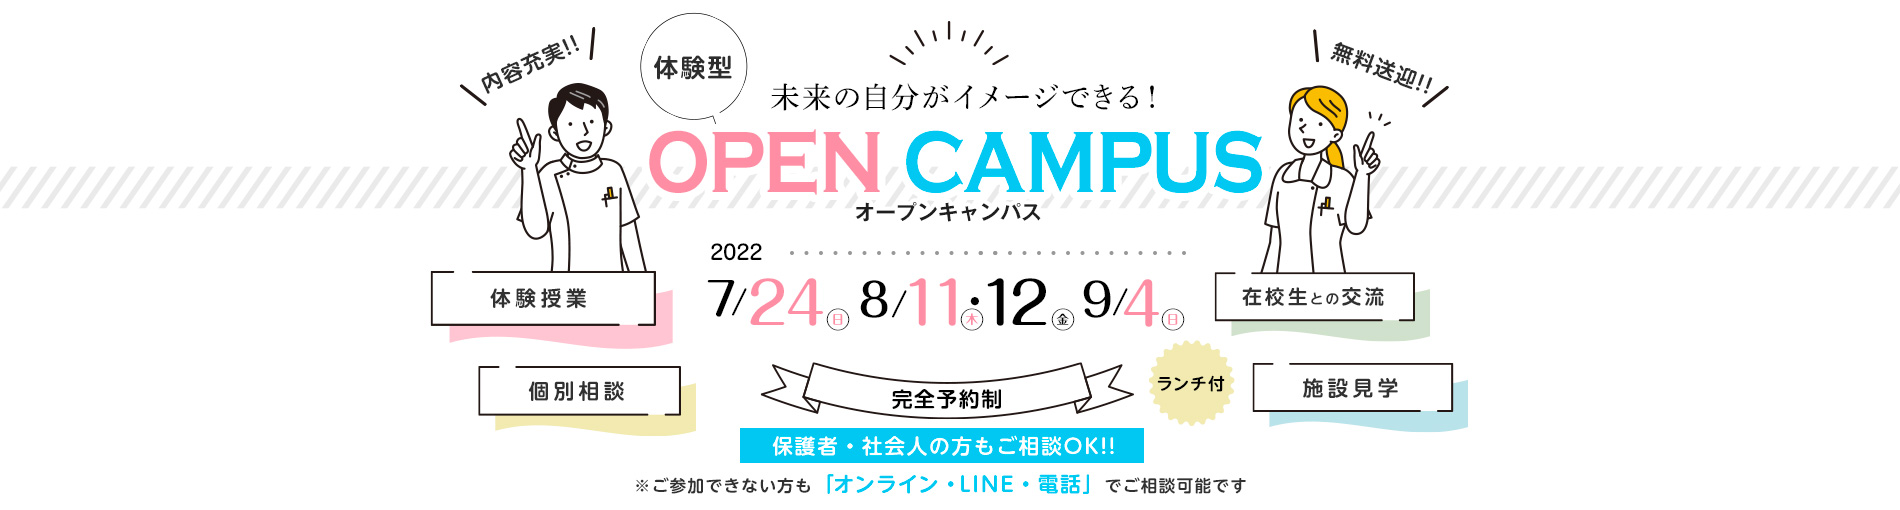 体験型オープンキャンパス開催!!